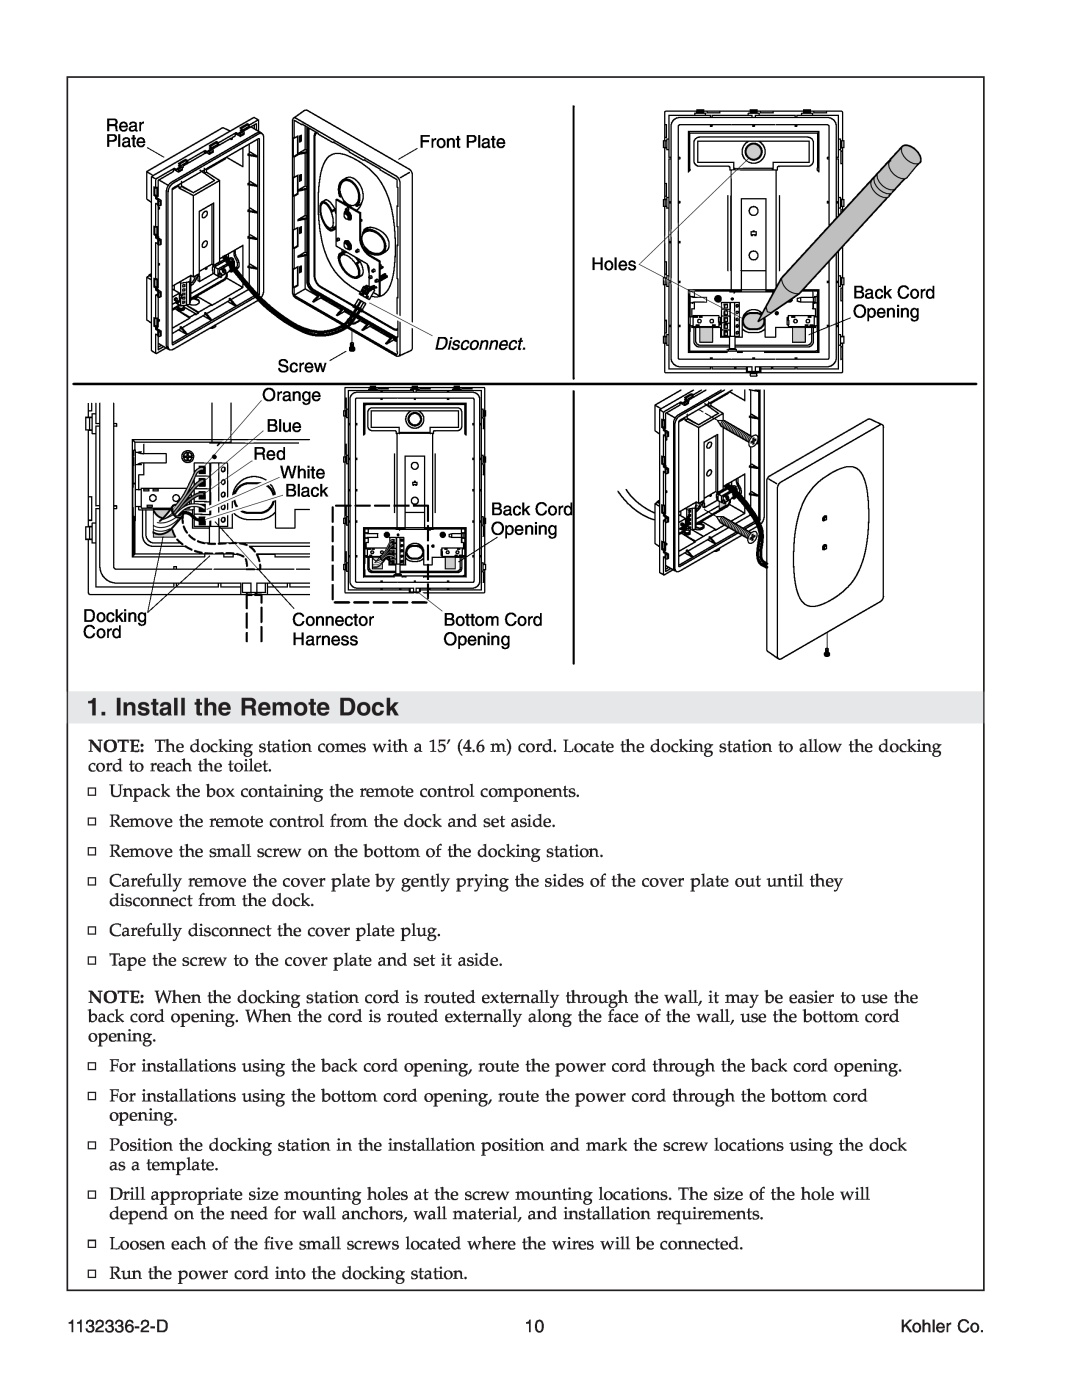 Kohler K-3900 manual Install the Remote Dock, Disconnect, 1132336-2-D, Kohler Co 